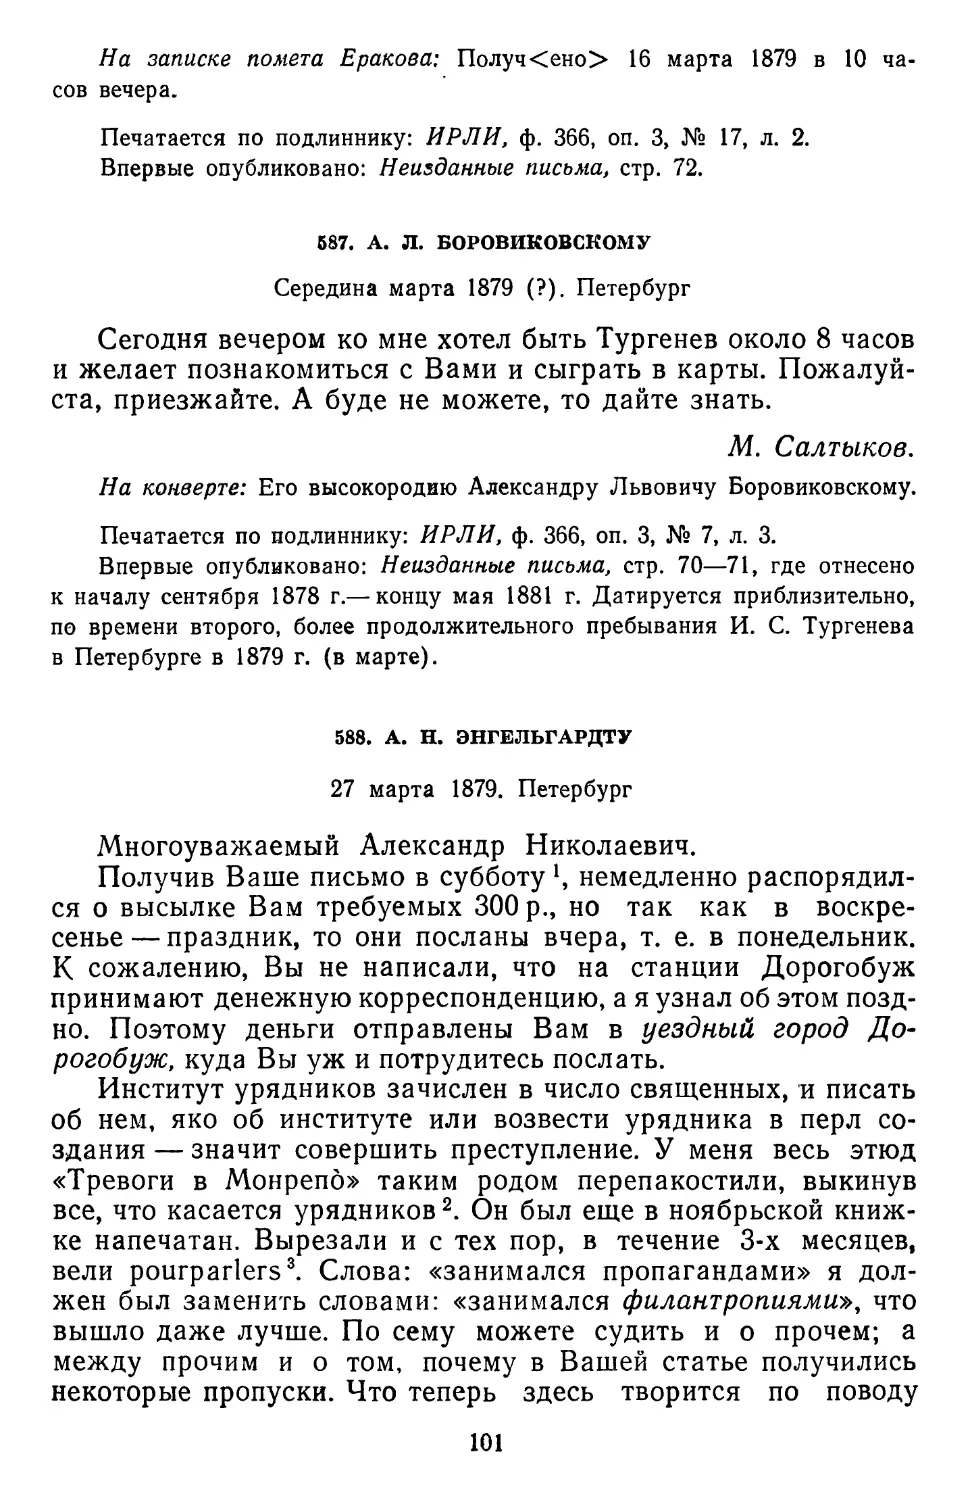 588.А.Н. Энгельгардту. 27 марта 1879. Петербург